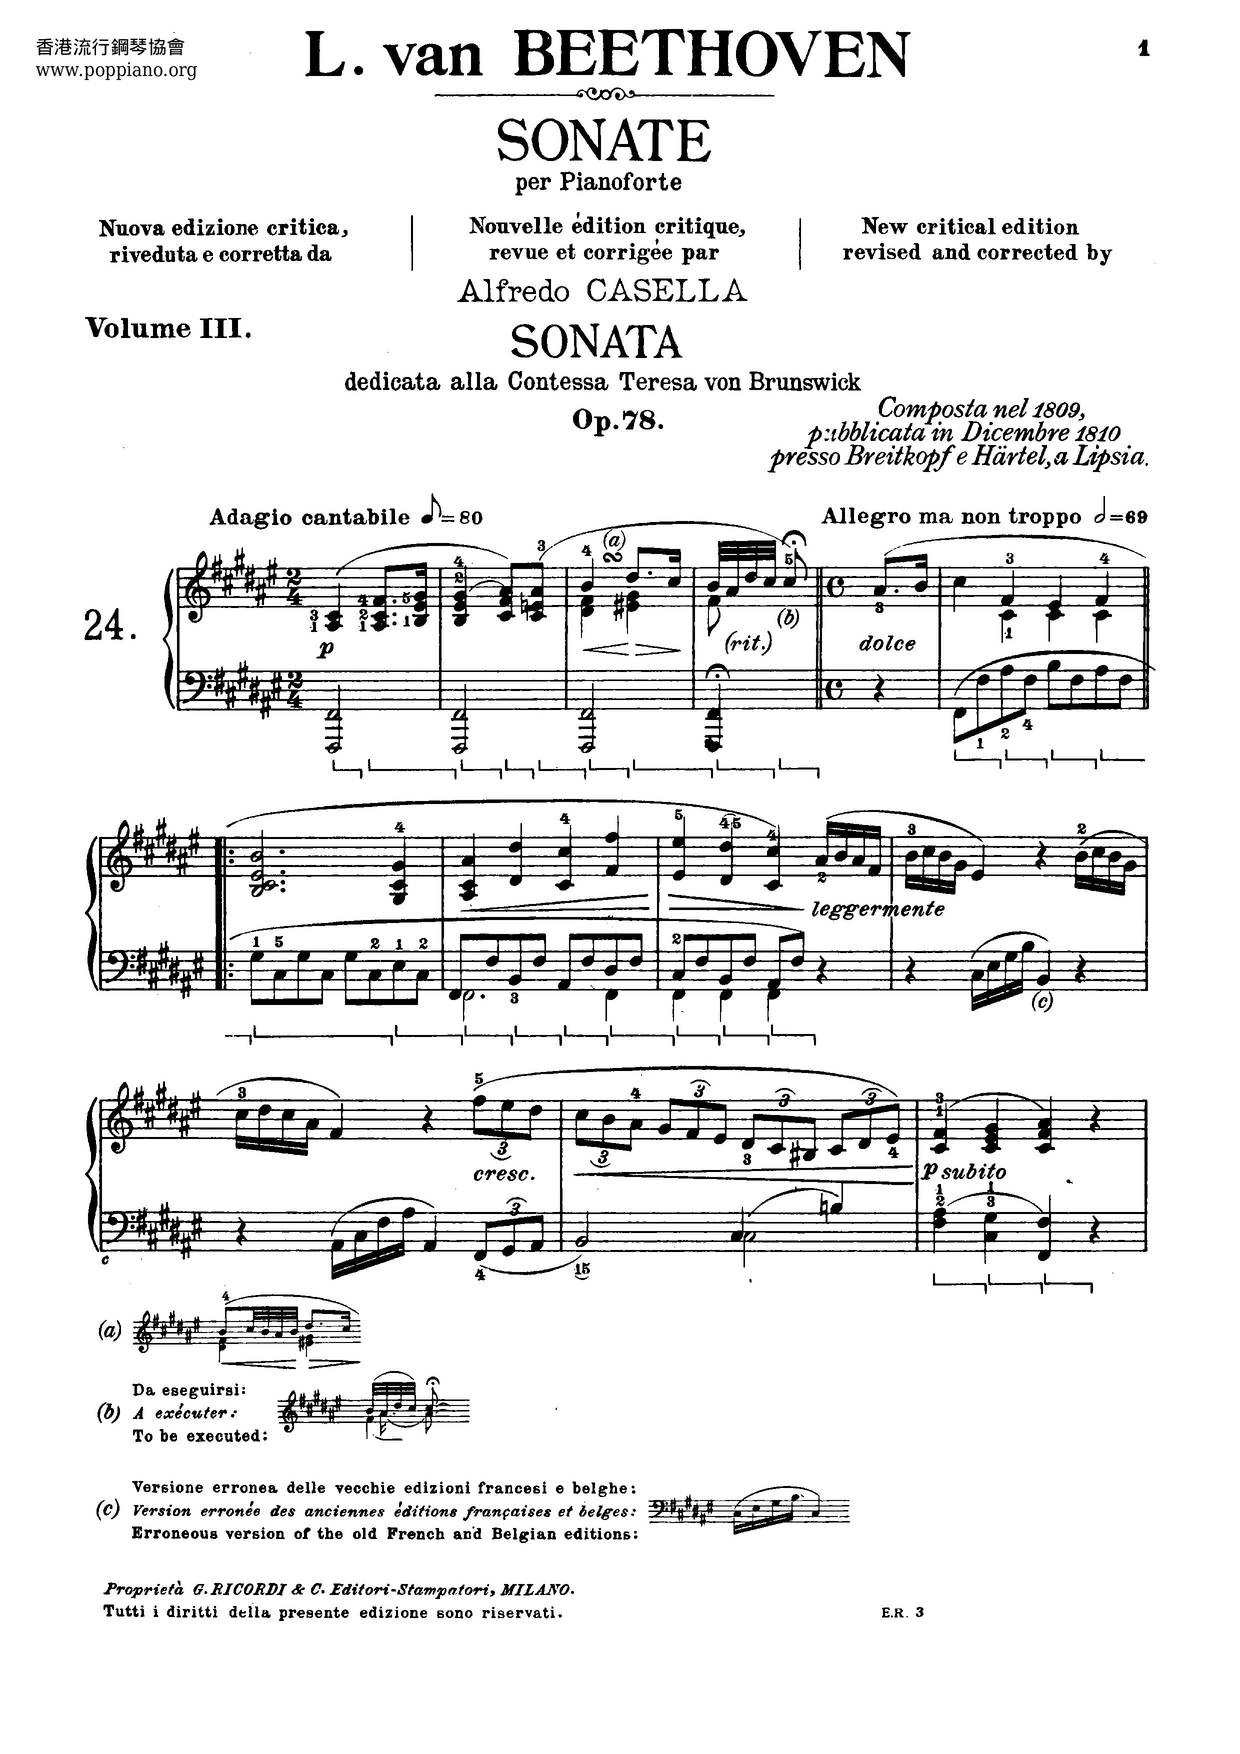 Complete Sonatas For Piano琴譜